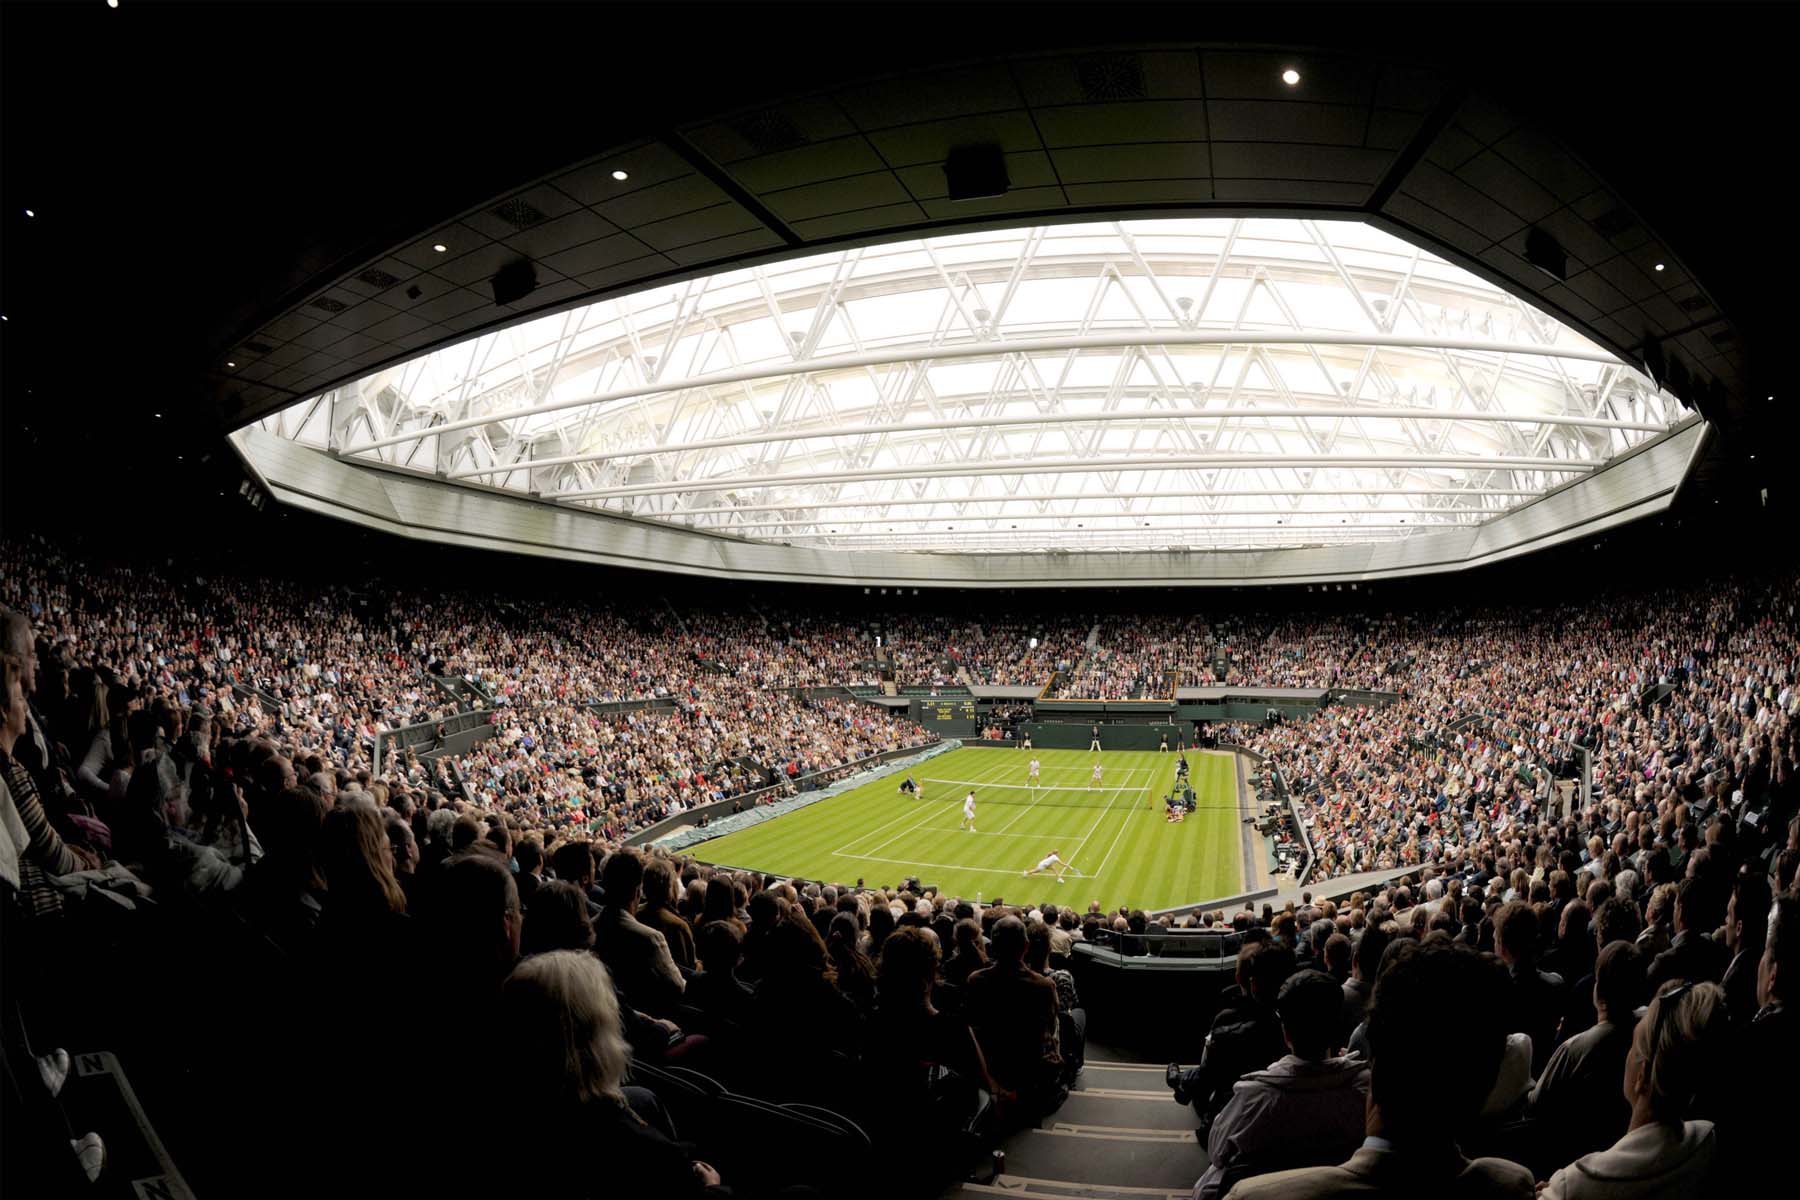 Wimbledon 2022 maçları hangi kanalda? Wimbledon maç programı 1 Temmuz 2022 Cuma